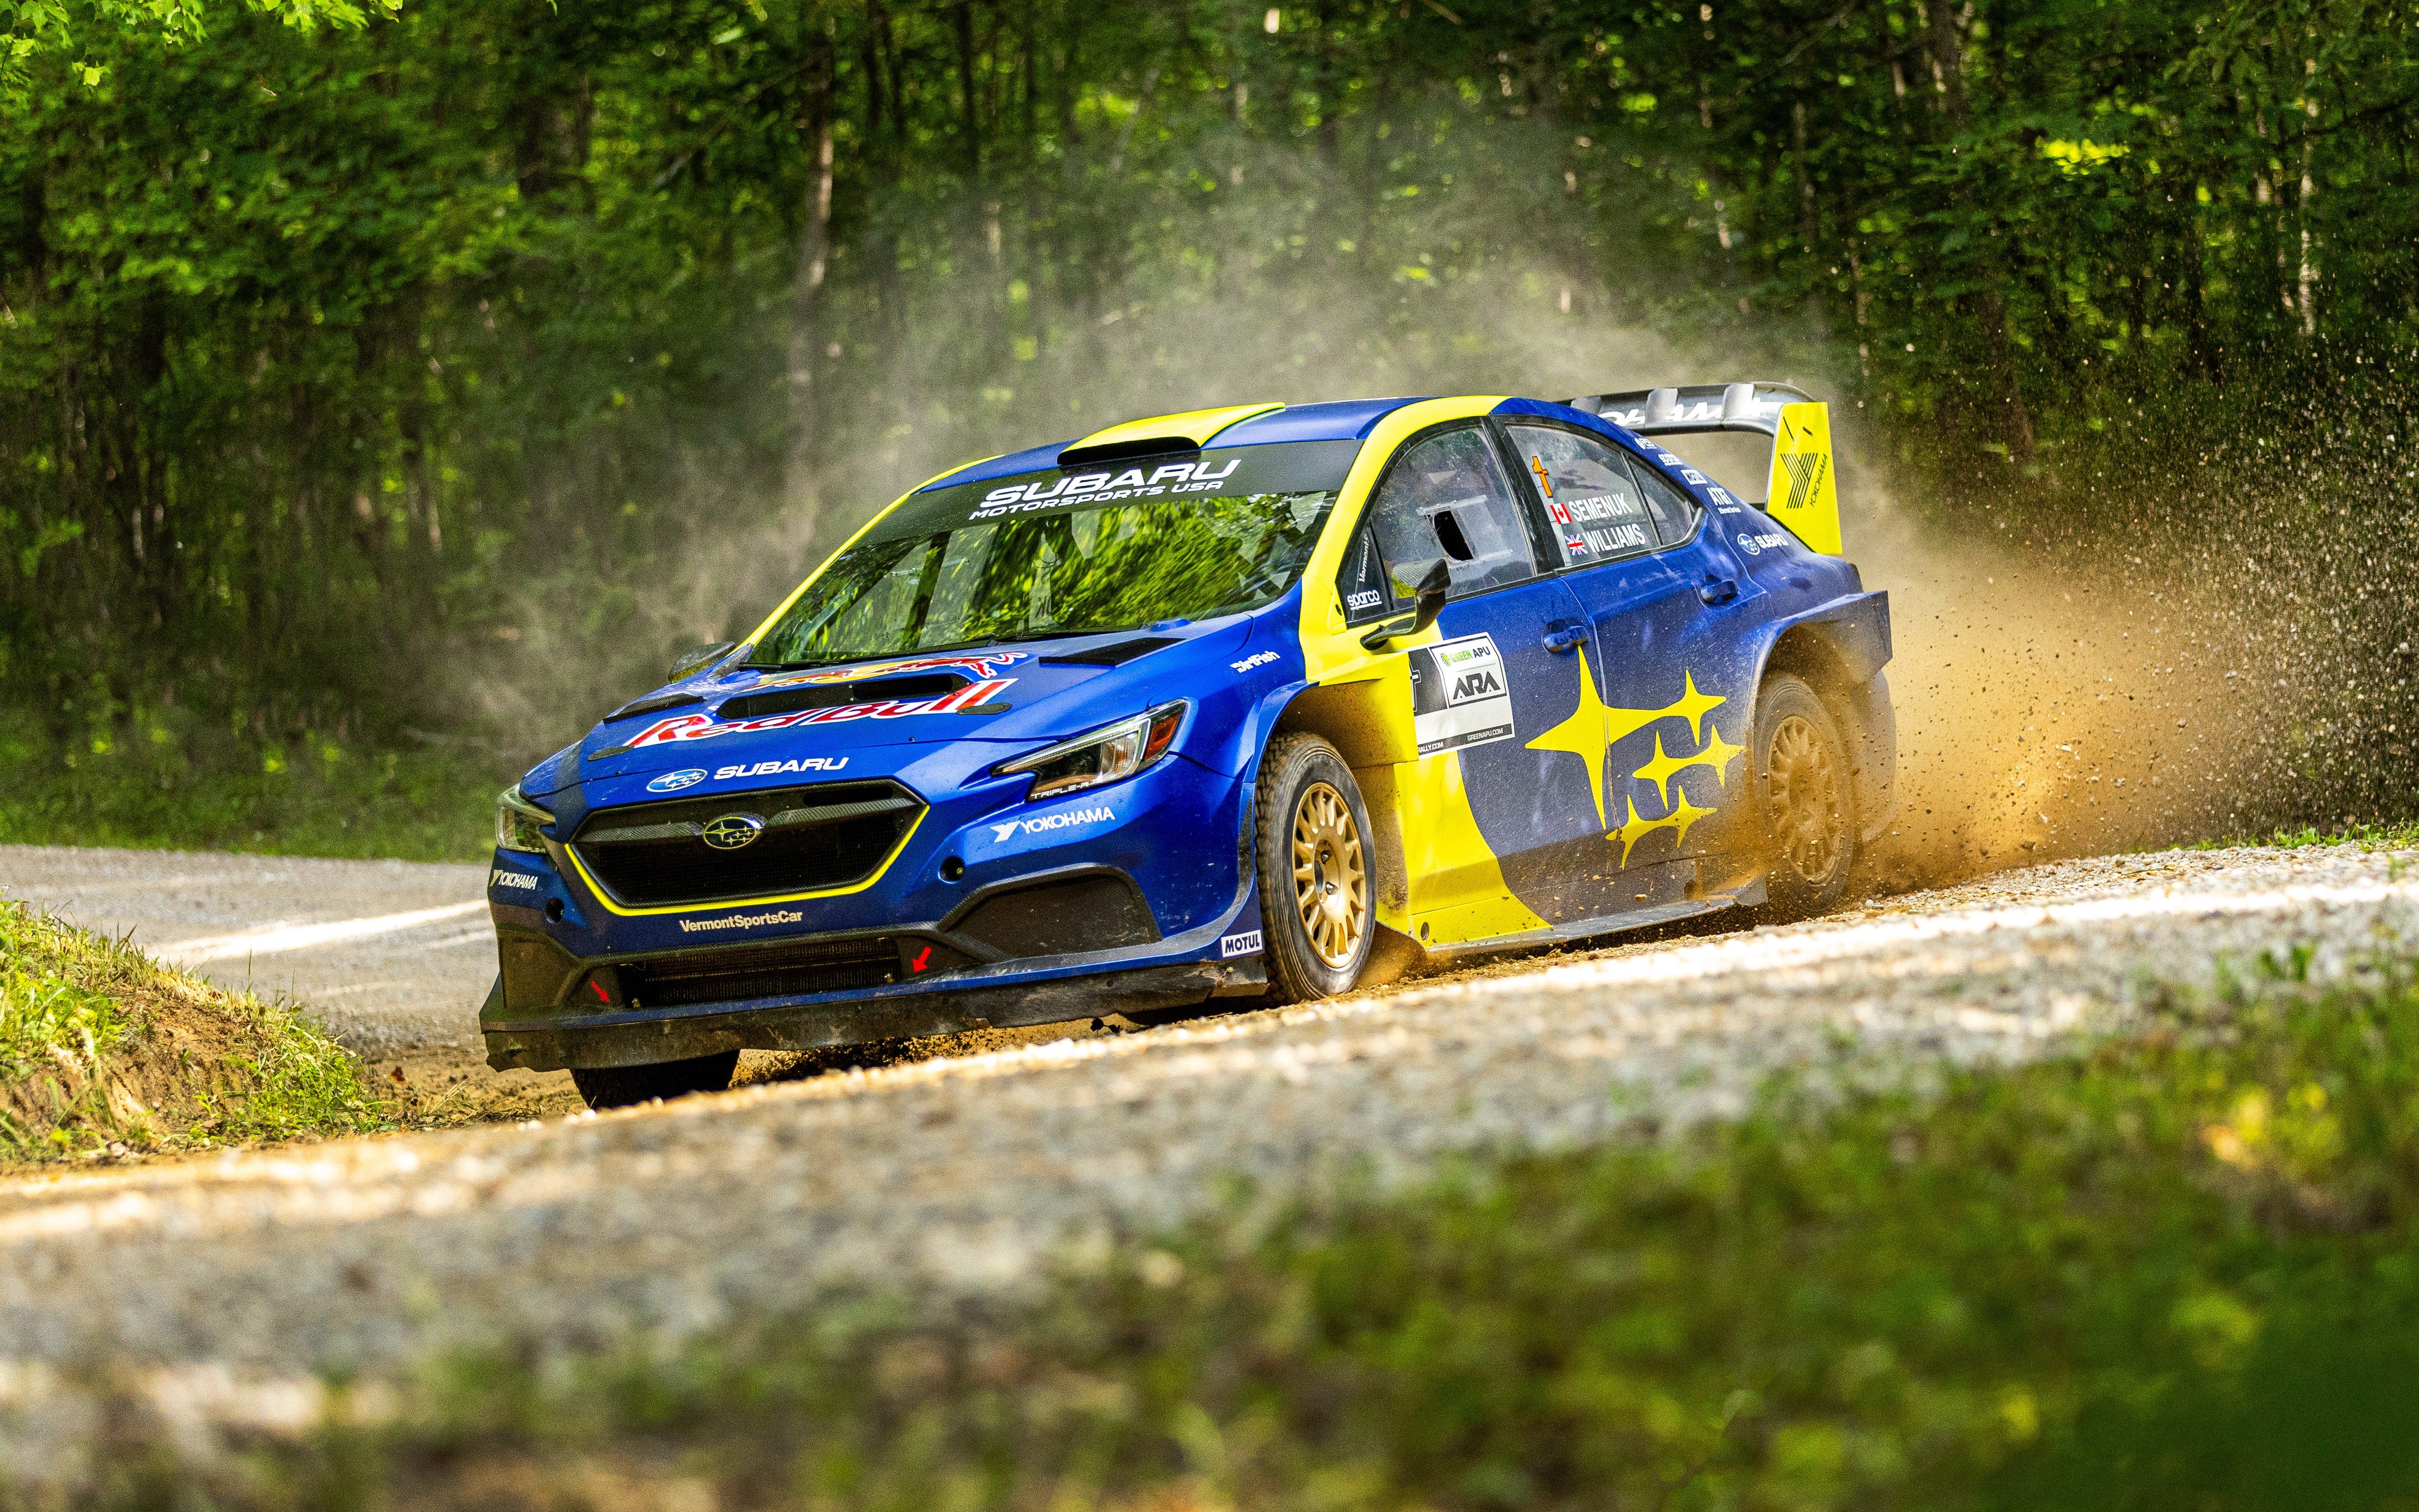 Subaru - Pictures 